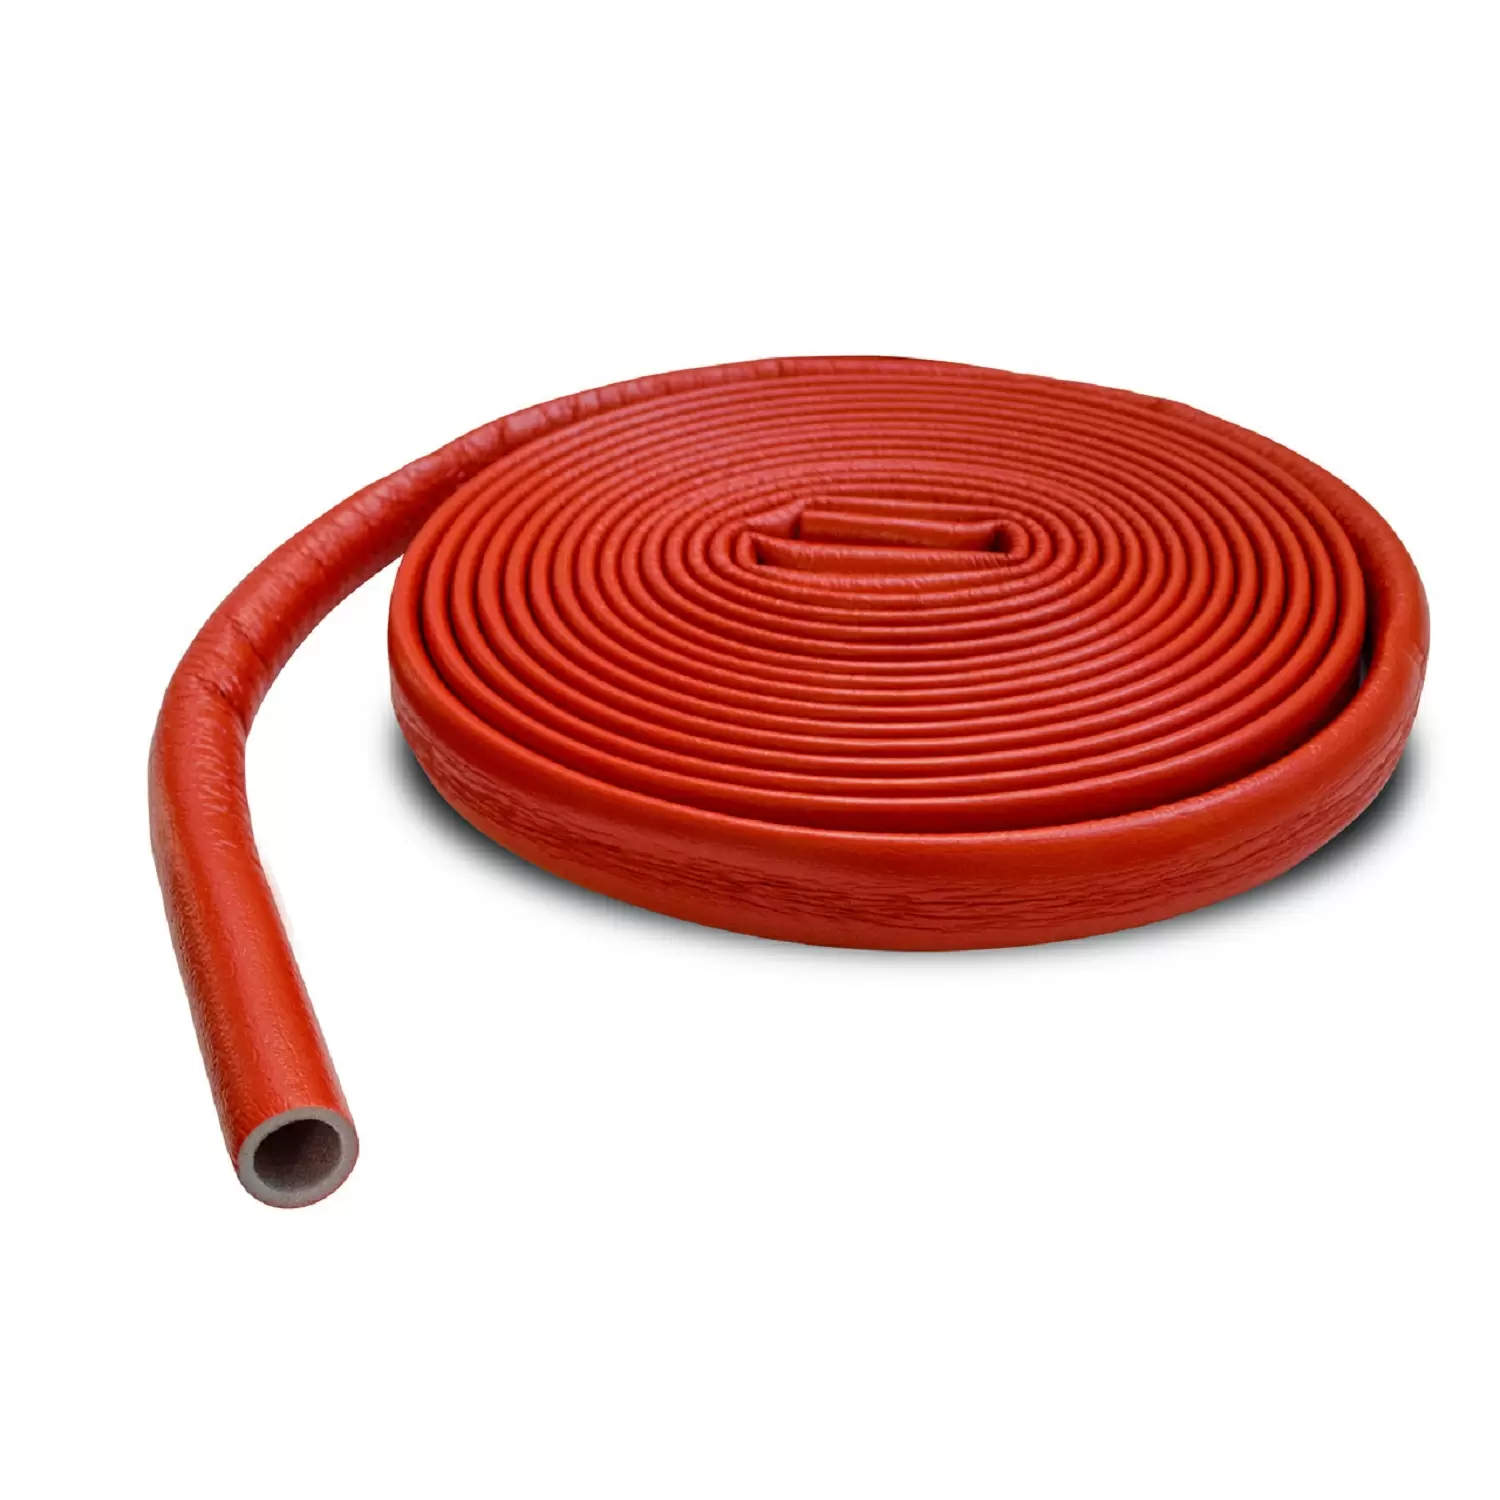 Теплоизоляция Энергофлекс супер протект 18/4 для труб диаметром 16 мм красная, бухта 11 м